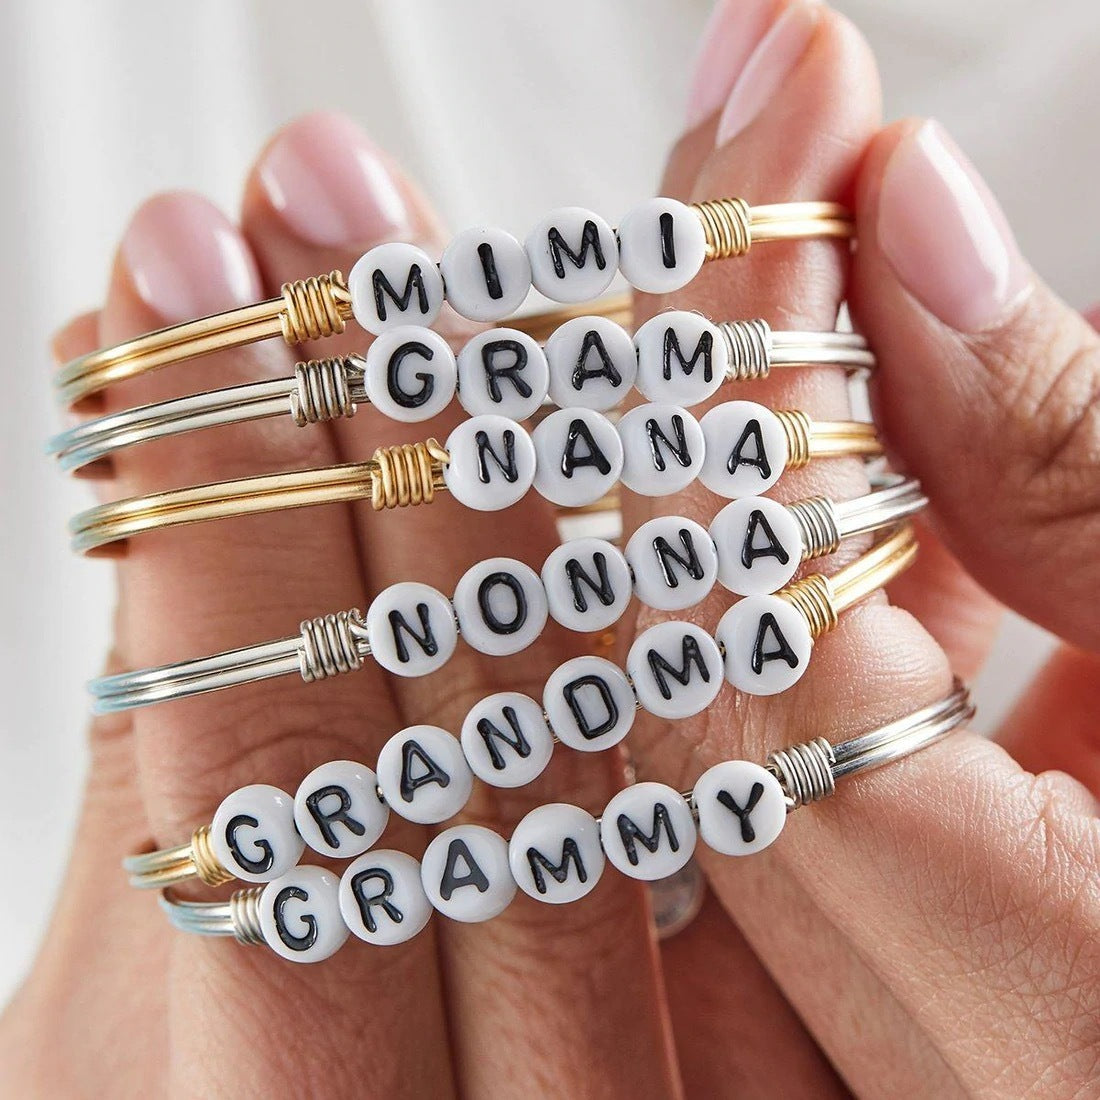 Grandma Letter Bead Bangle Bracelet, Silver